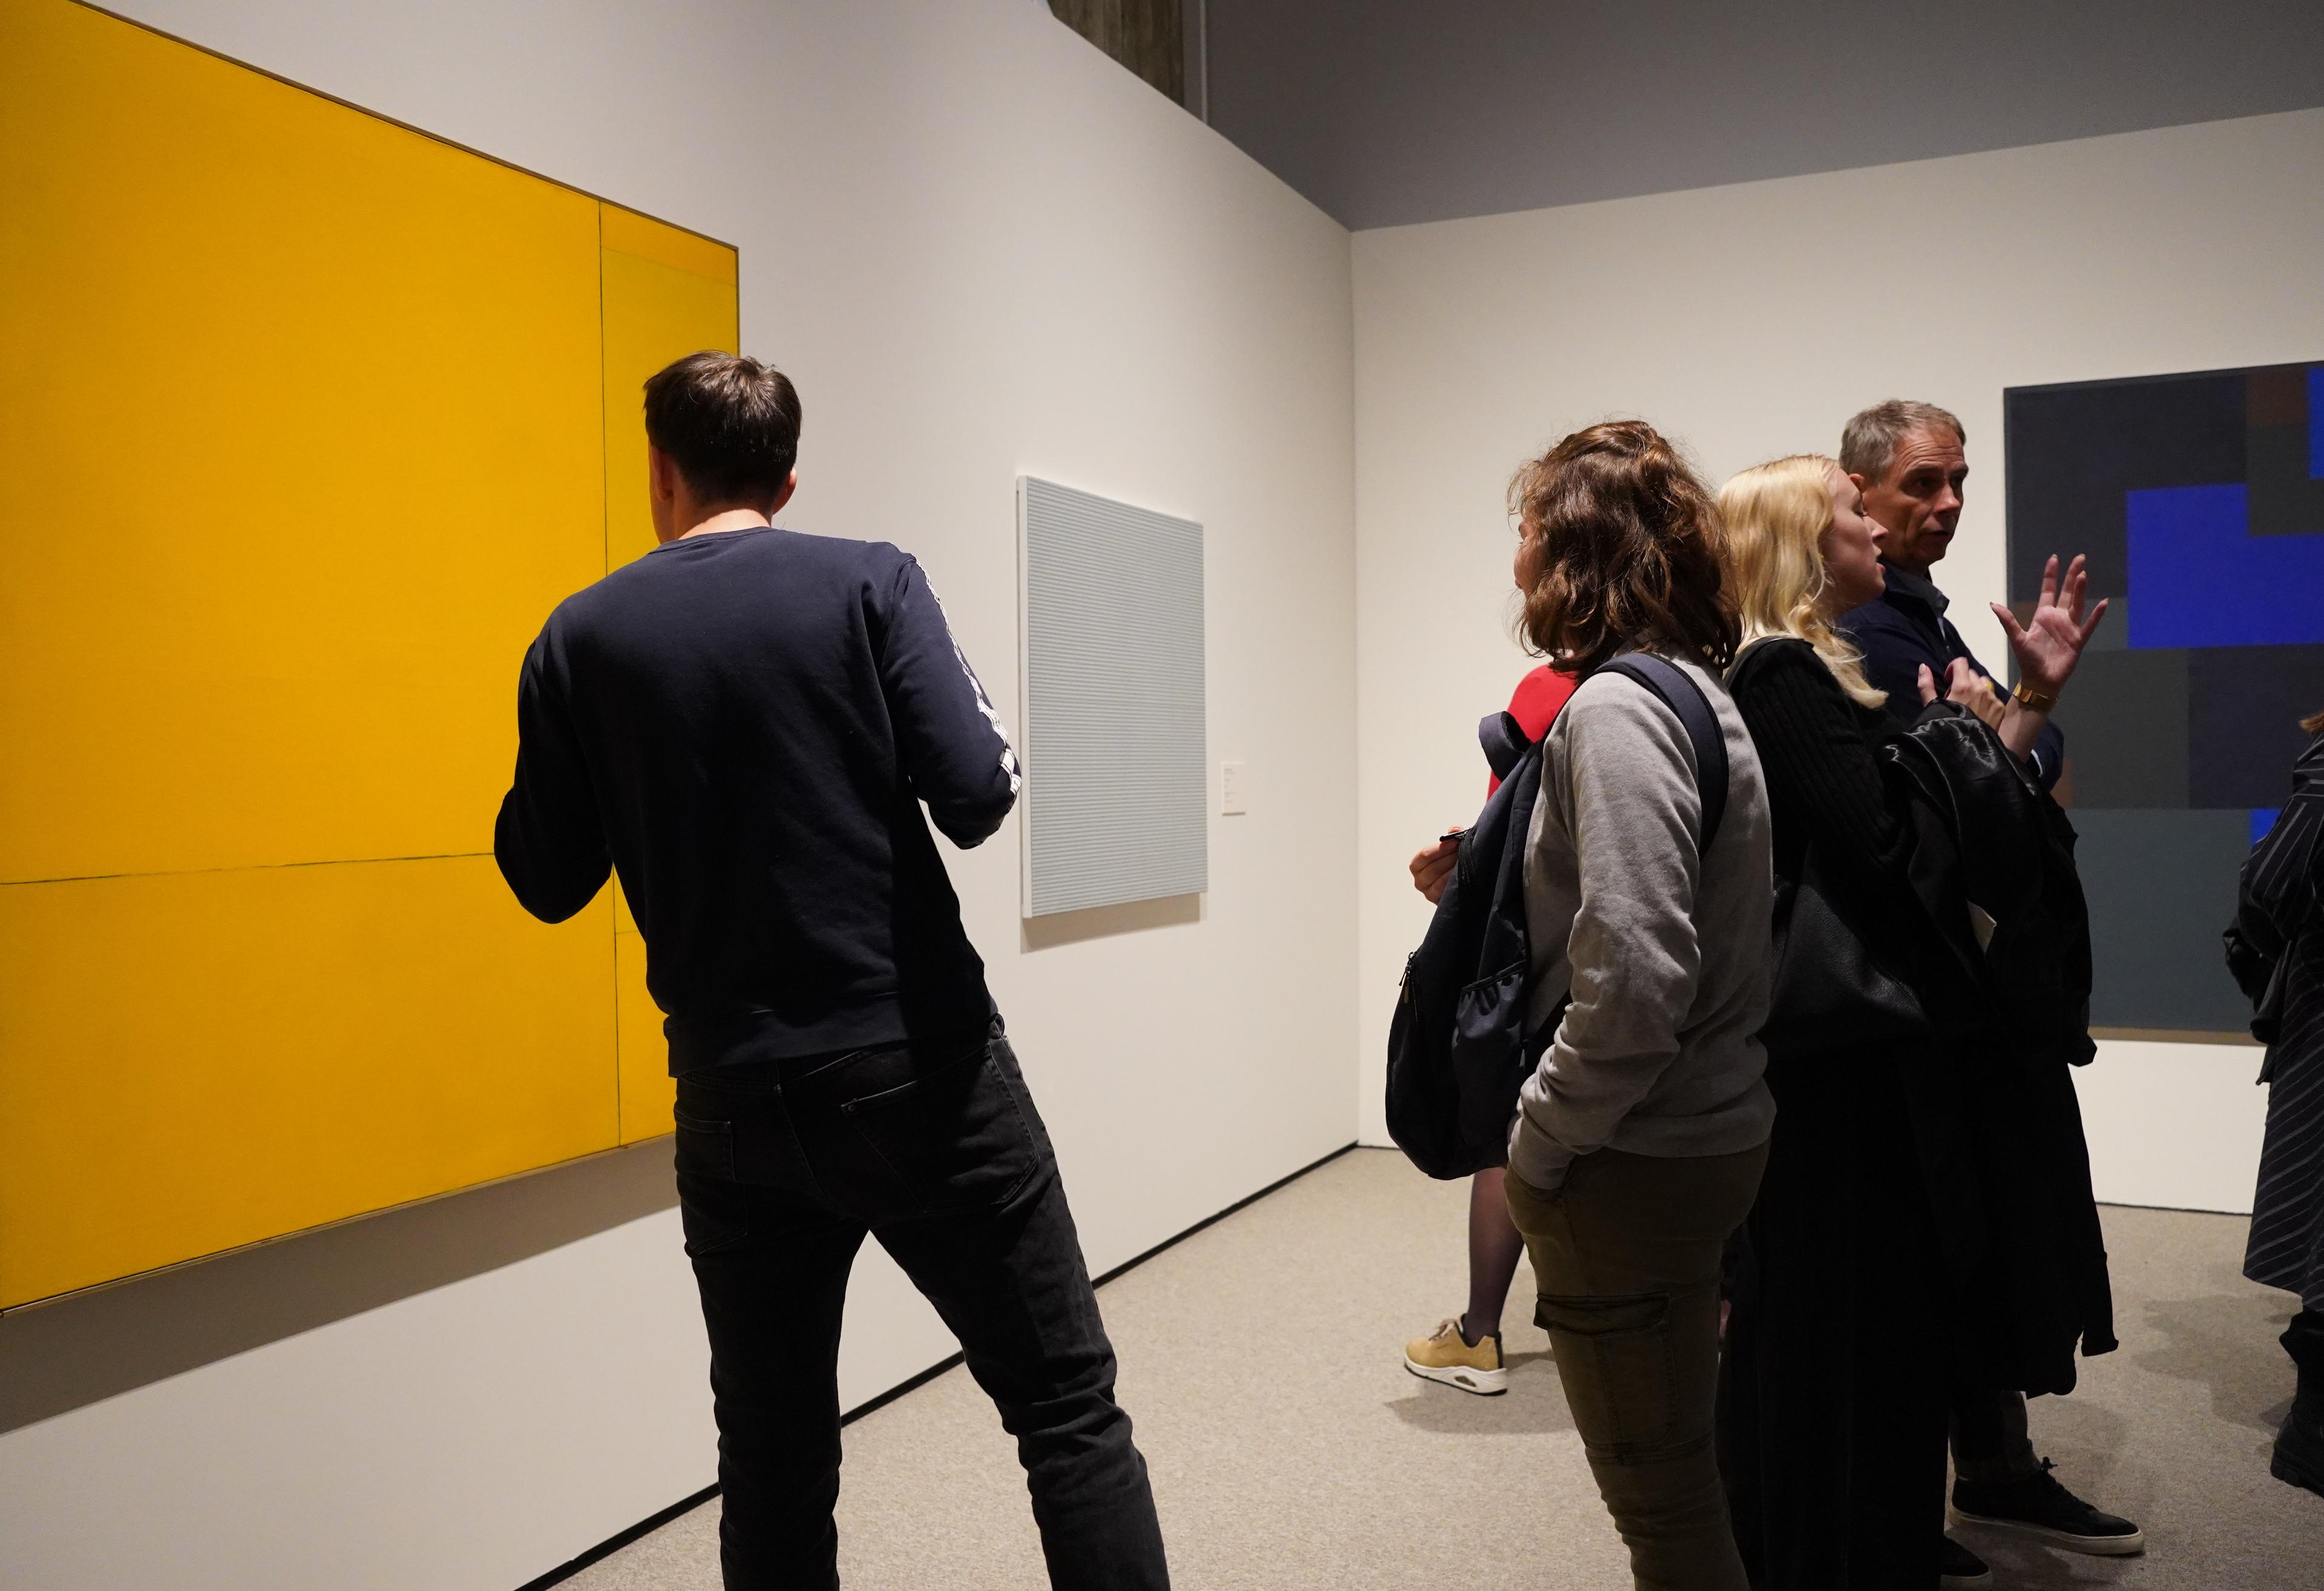 En person står med ryggen til kamera, foran et abstrakt maleri, som henger på en hvit utstillingsvegg